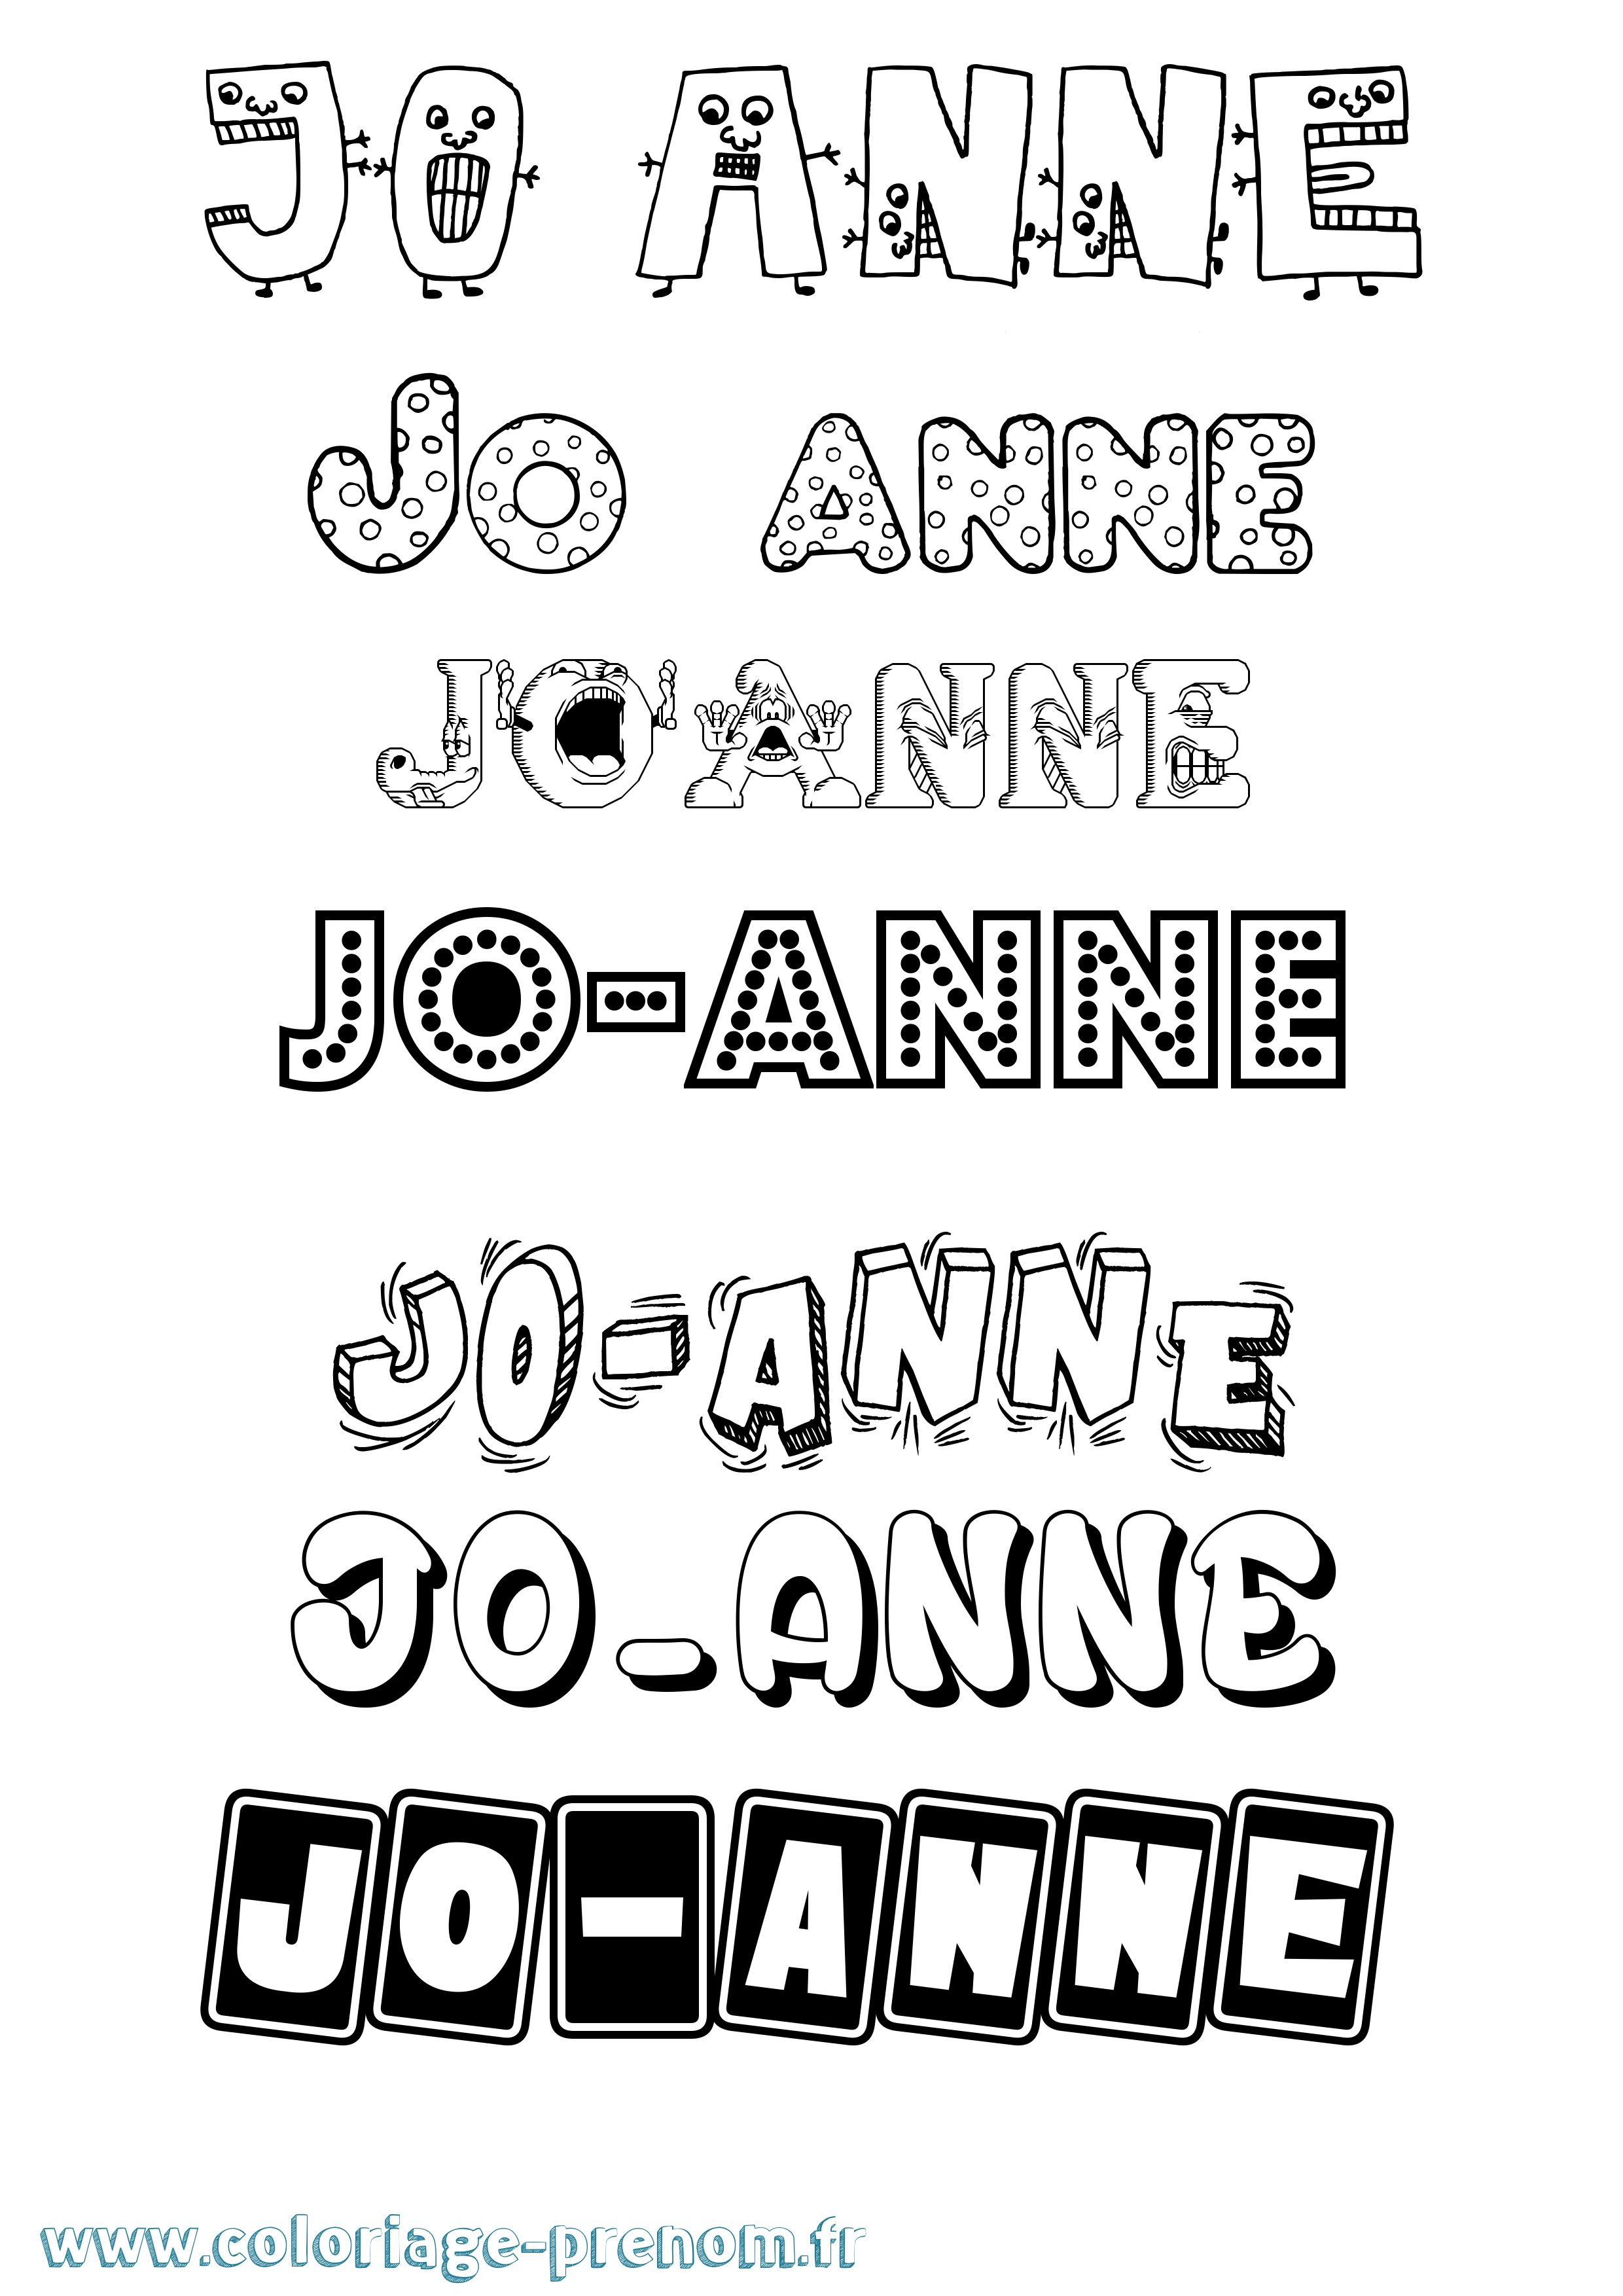 Coloriage prénom Jo-Anne Fun